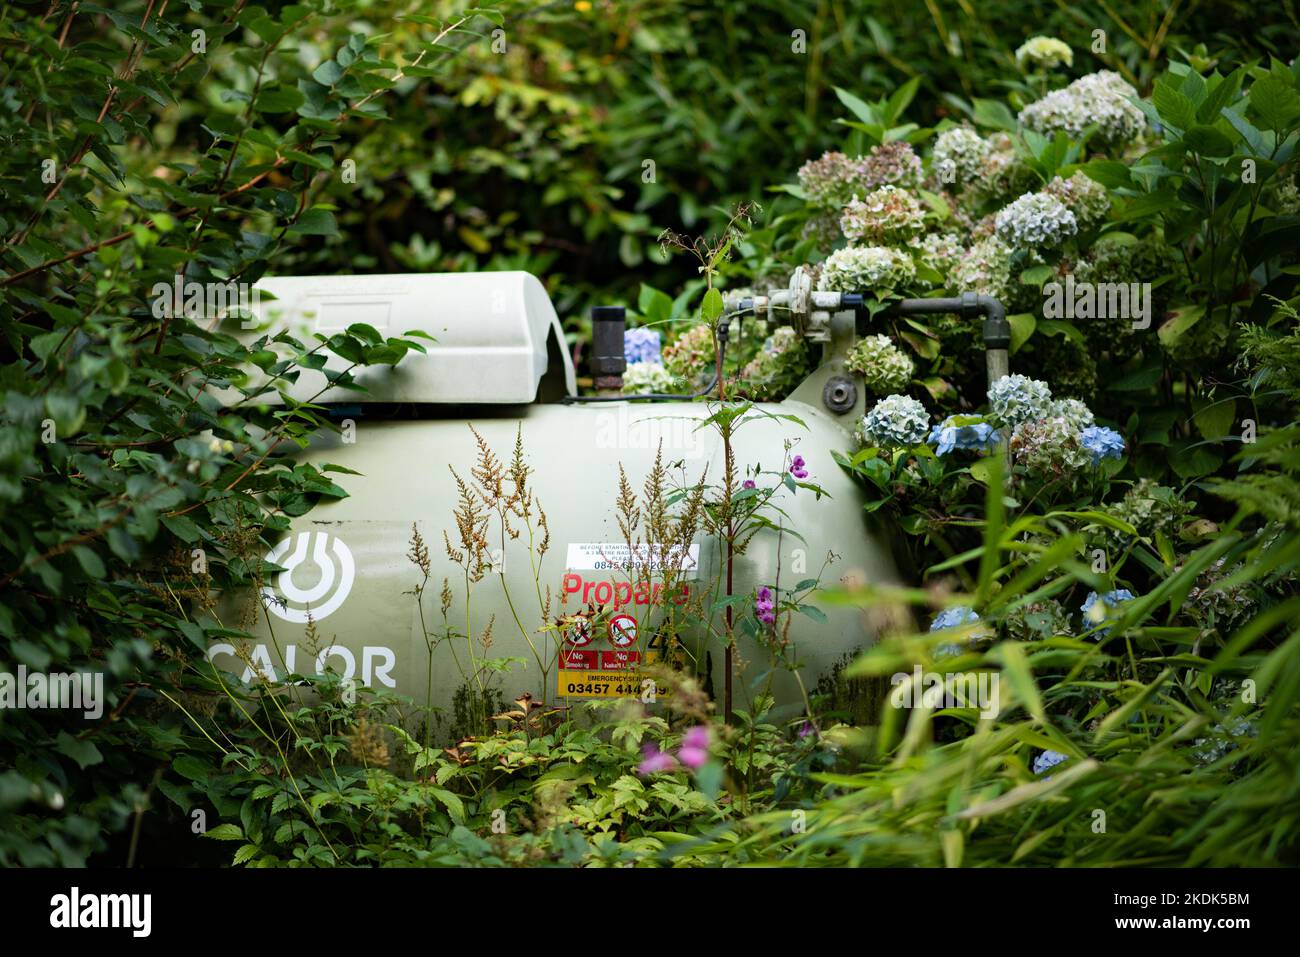 A Calor gas tank in a garden, Chipping, Preston, Lancashire. Stock Photo